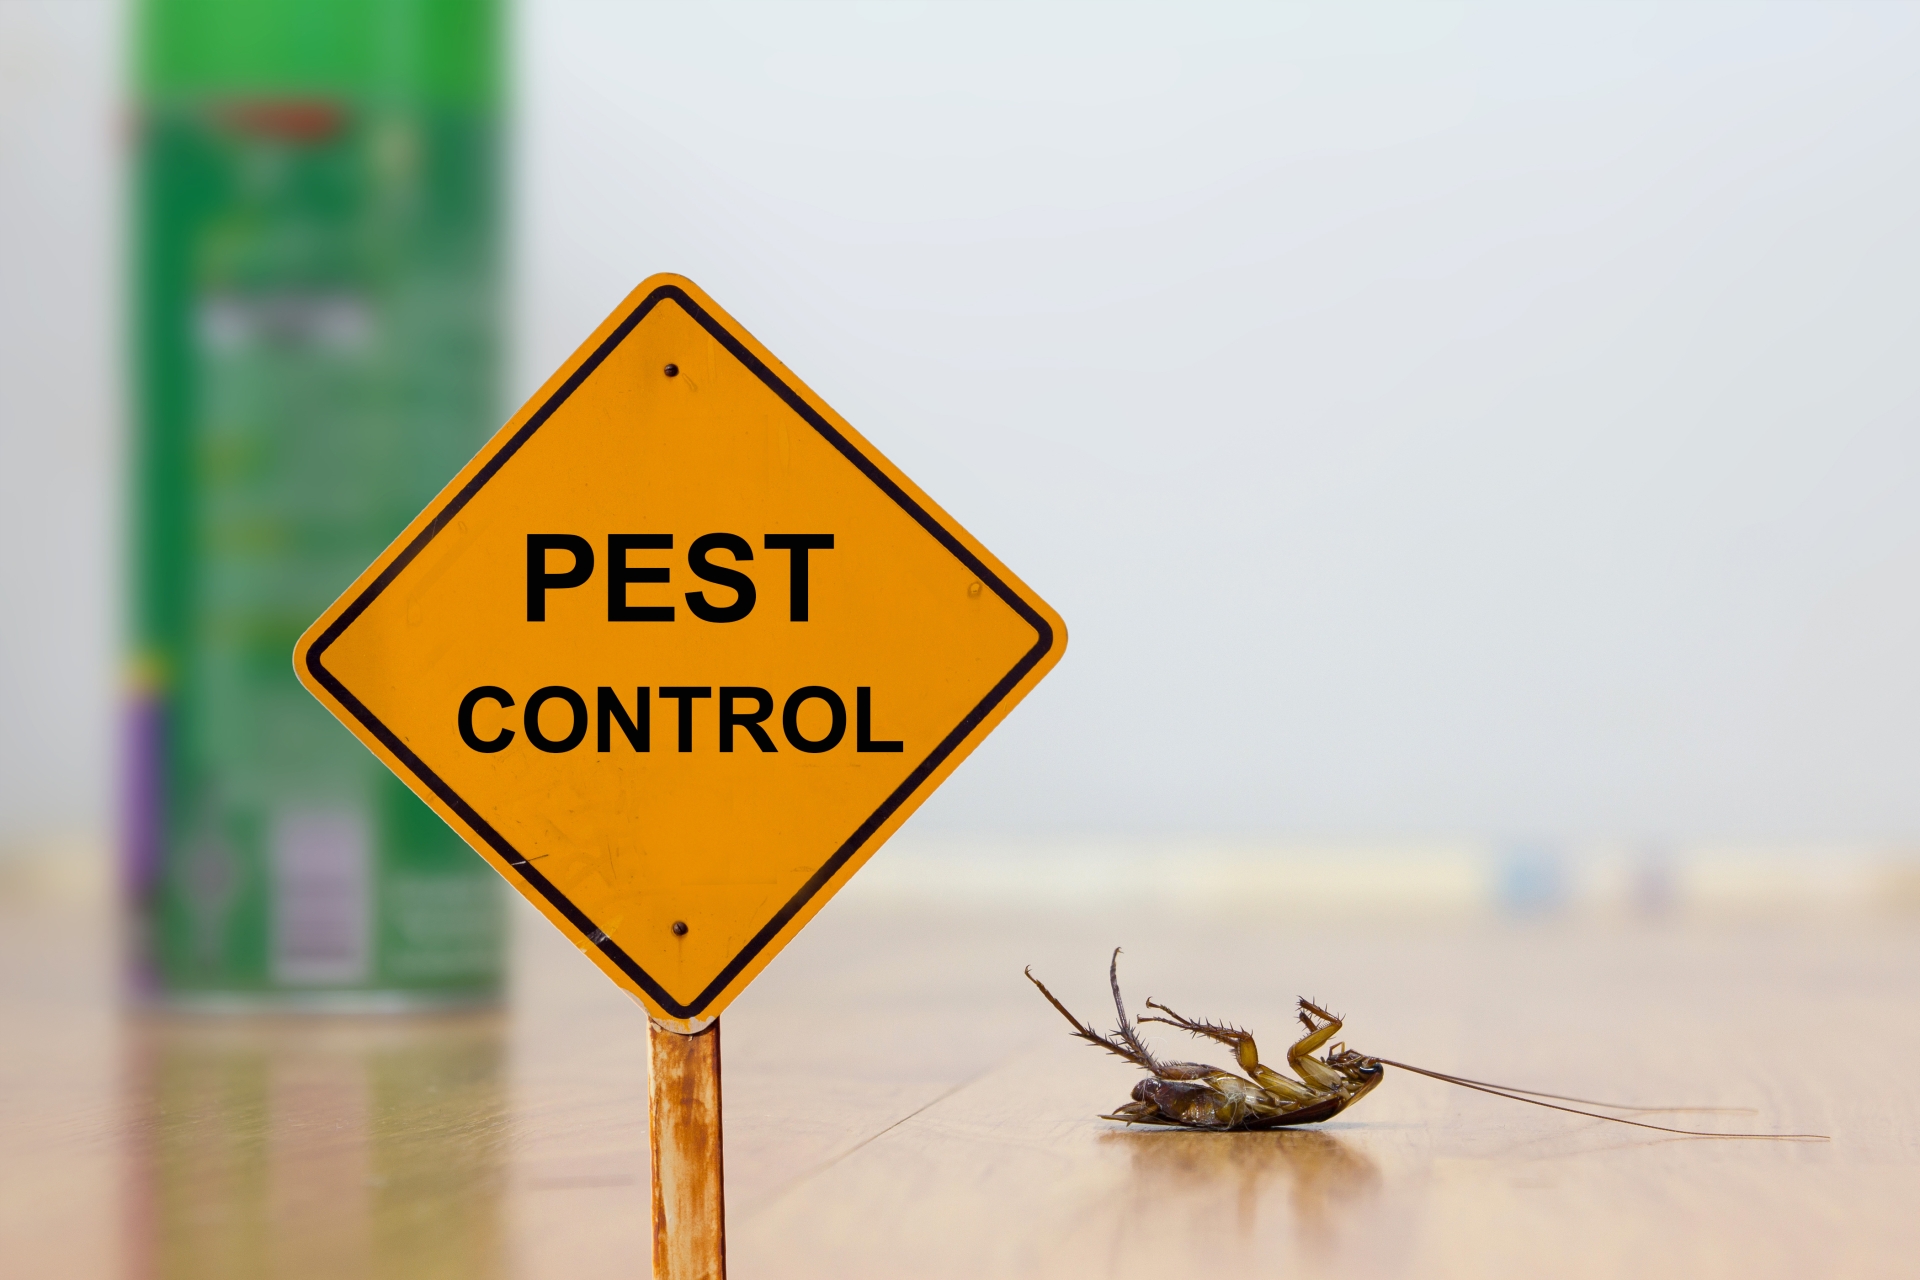 24 Hour Pest Control, Pest Control in Weybridge, Oatlands, KT13. Call Now 020 8166 9746